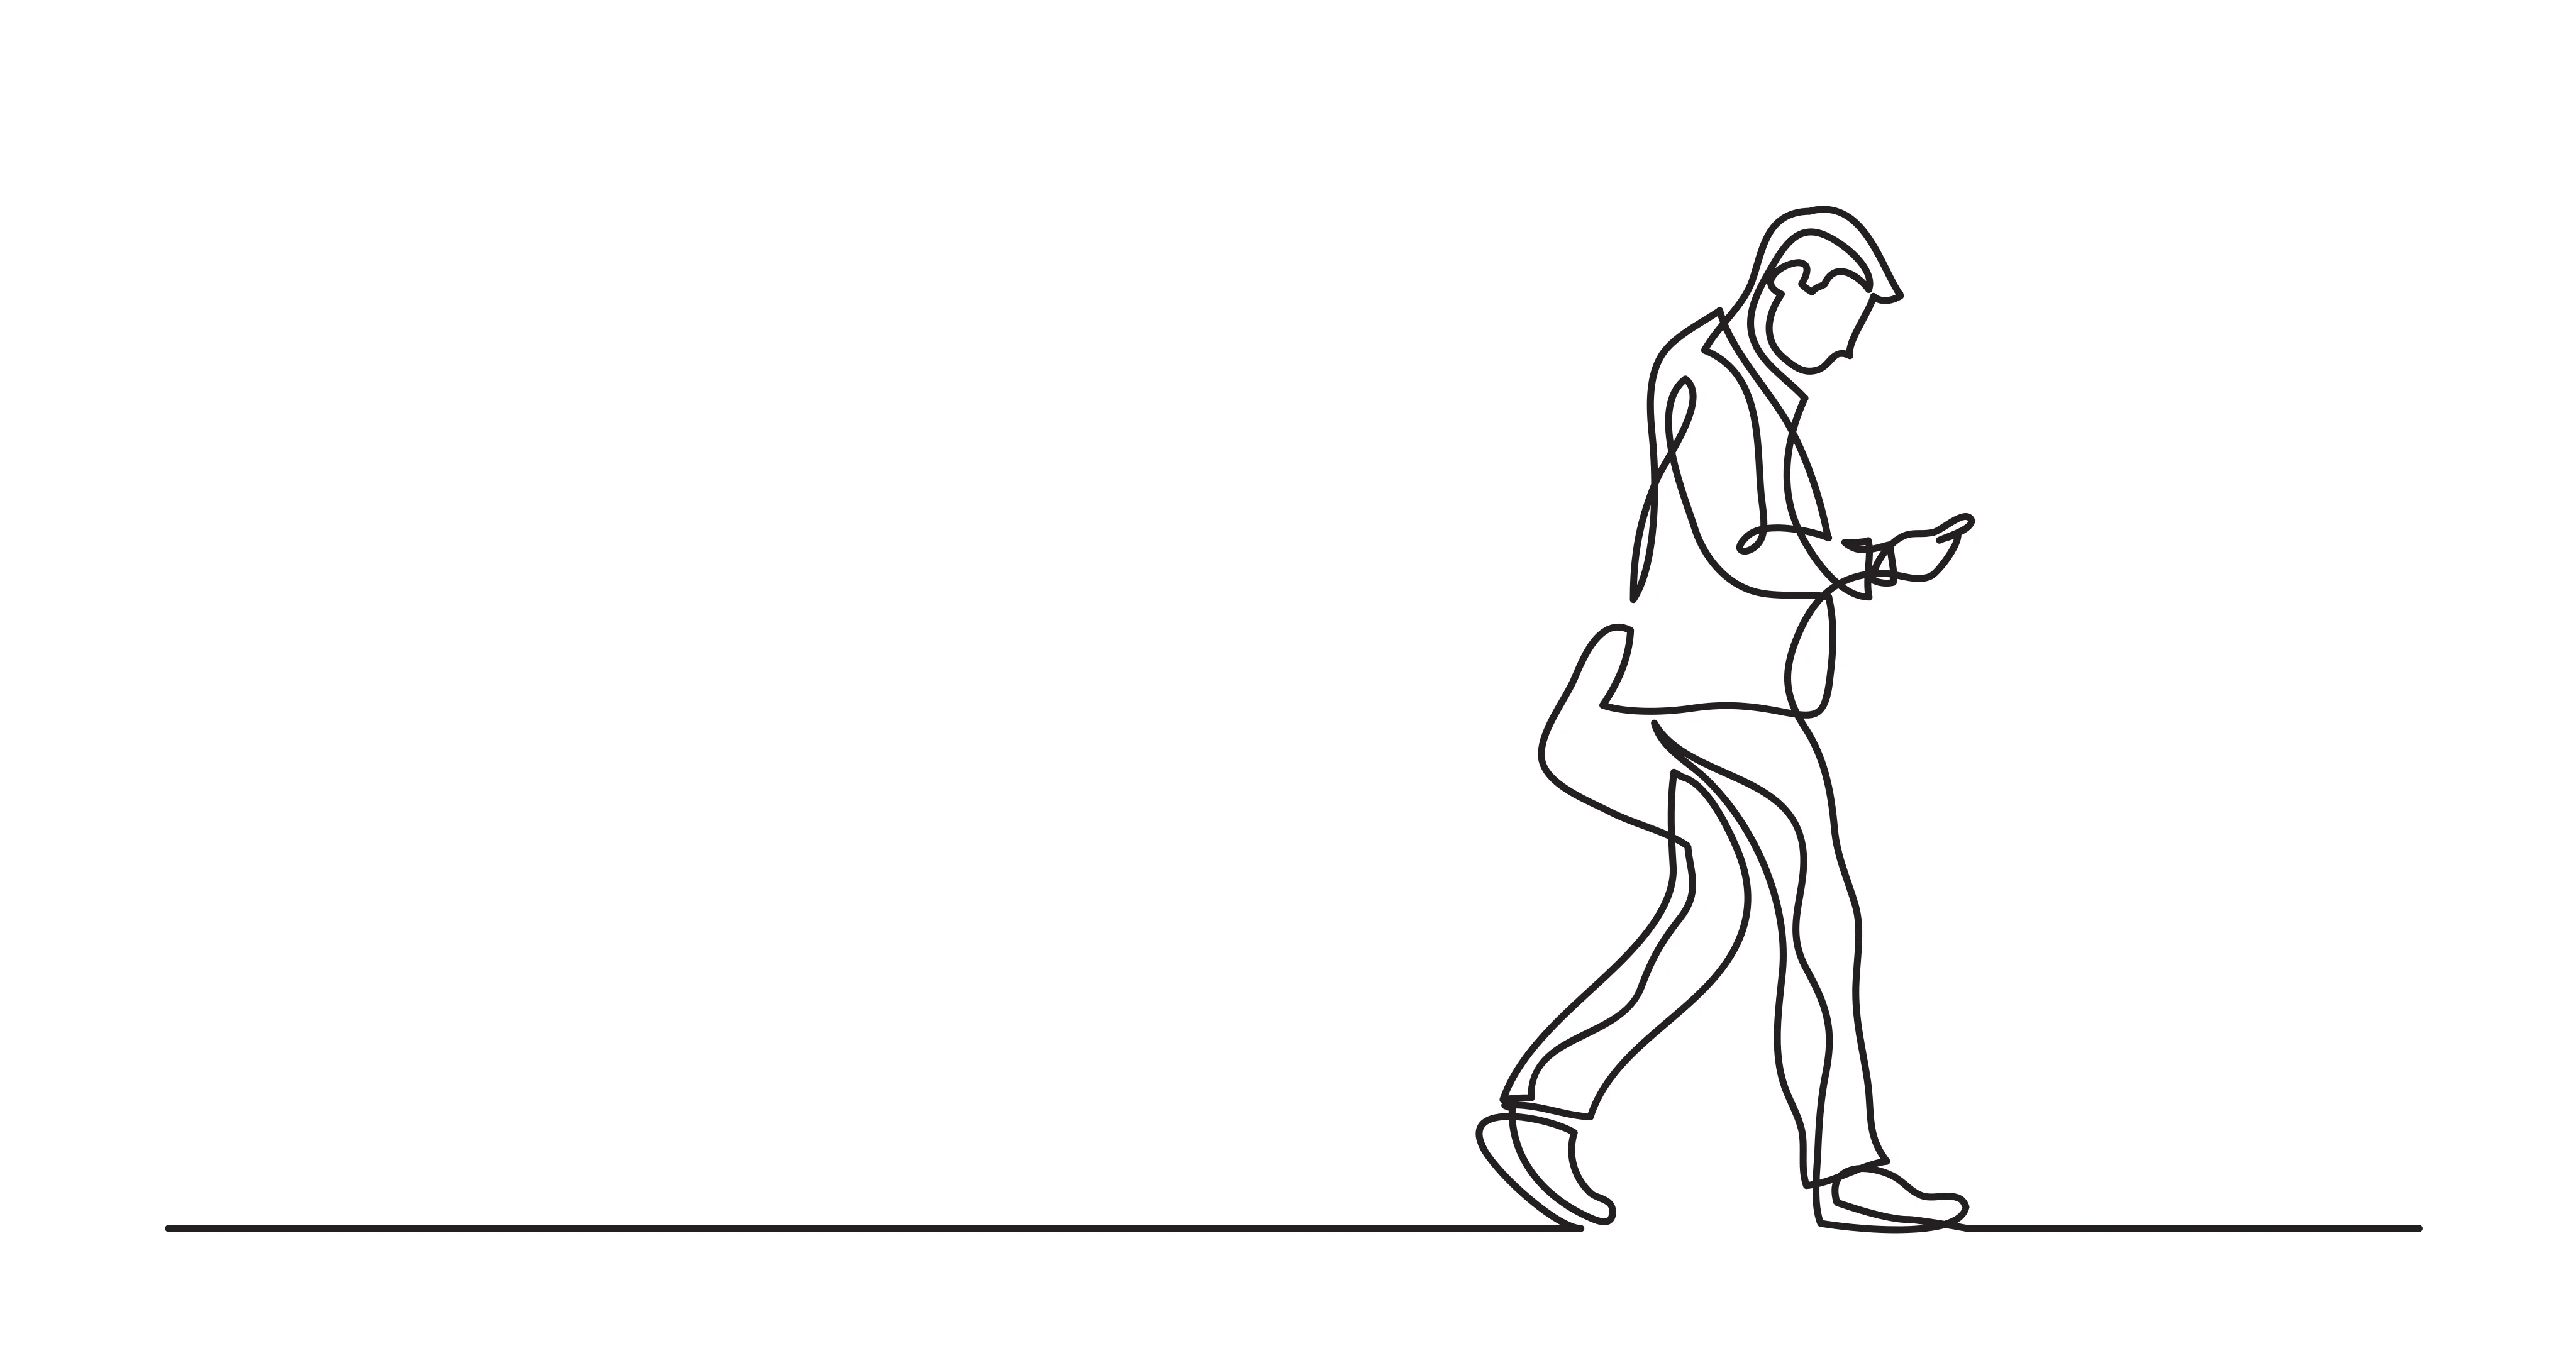 Monochrome pencil sketch of a man walking alone on Craiyon